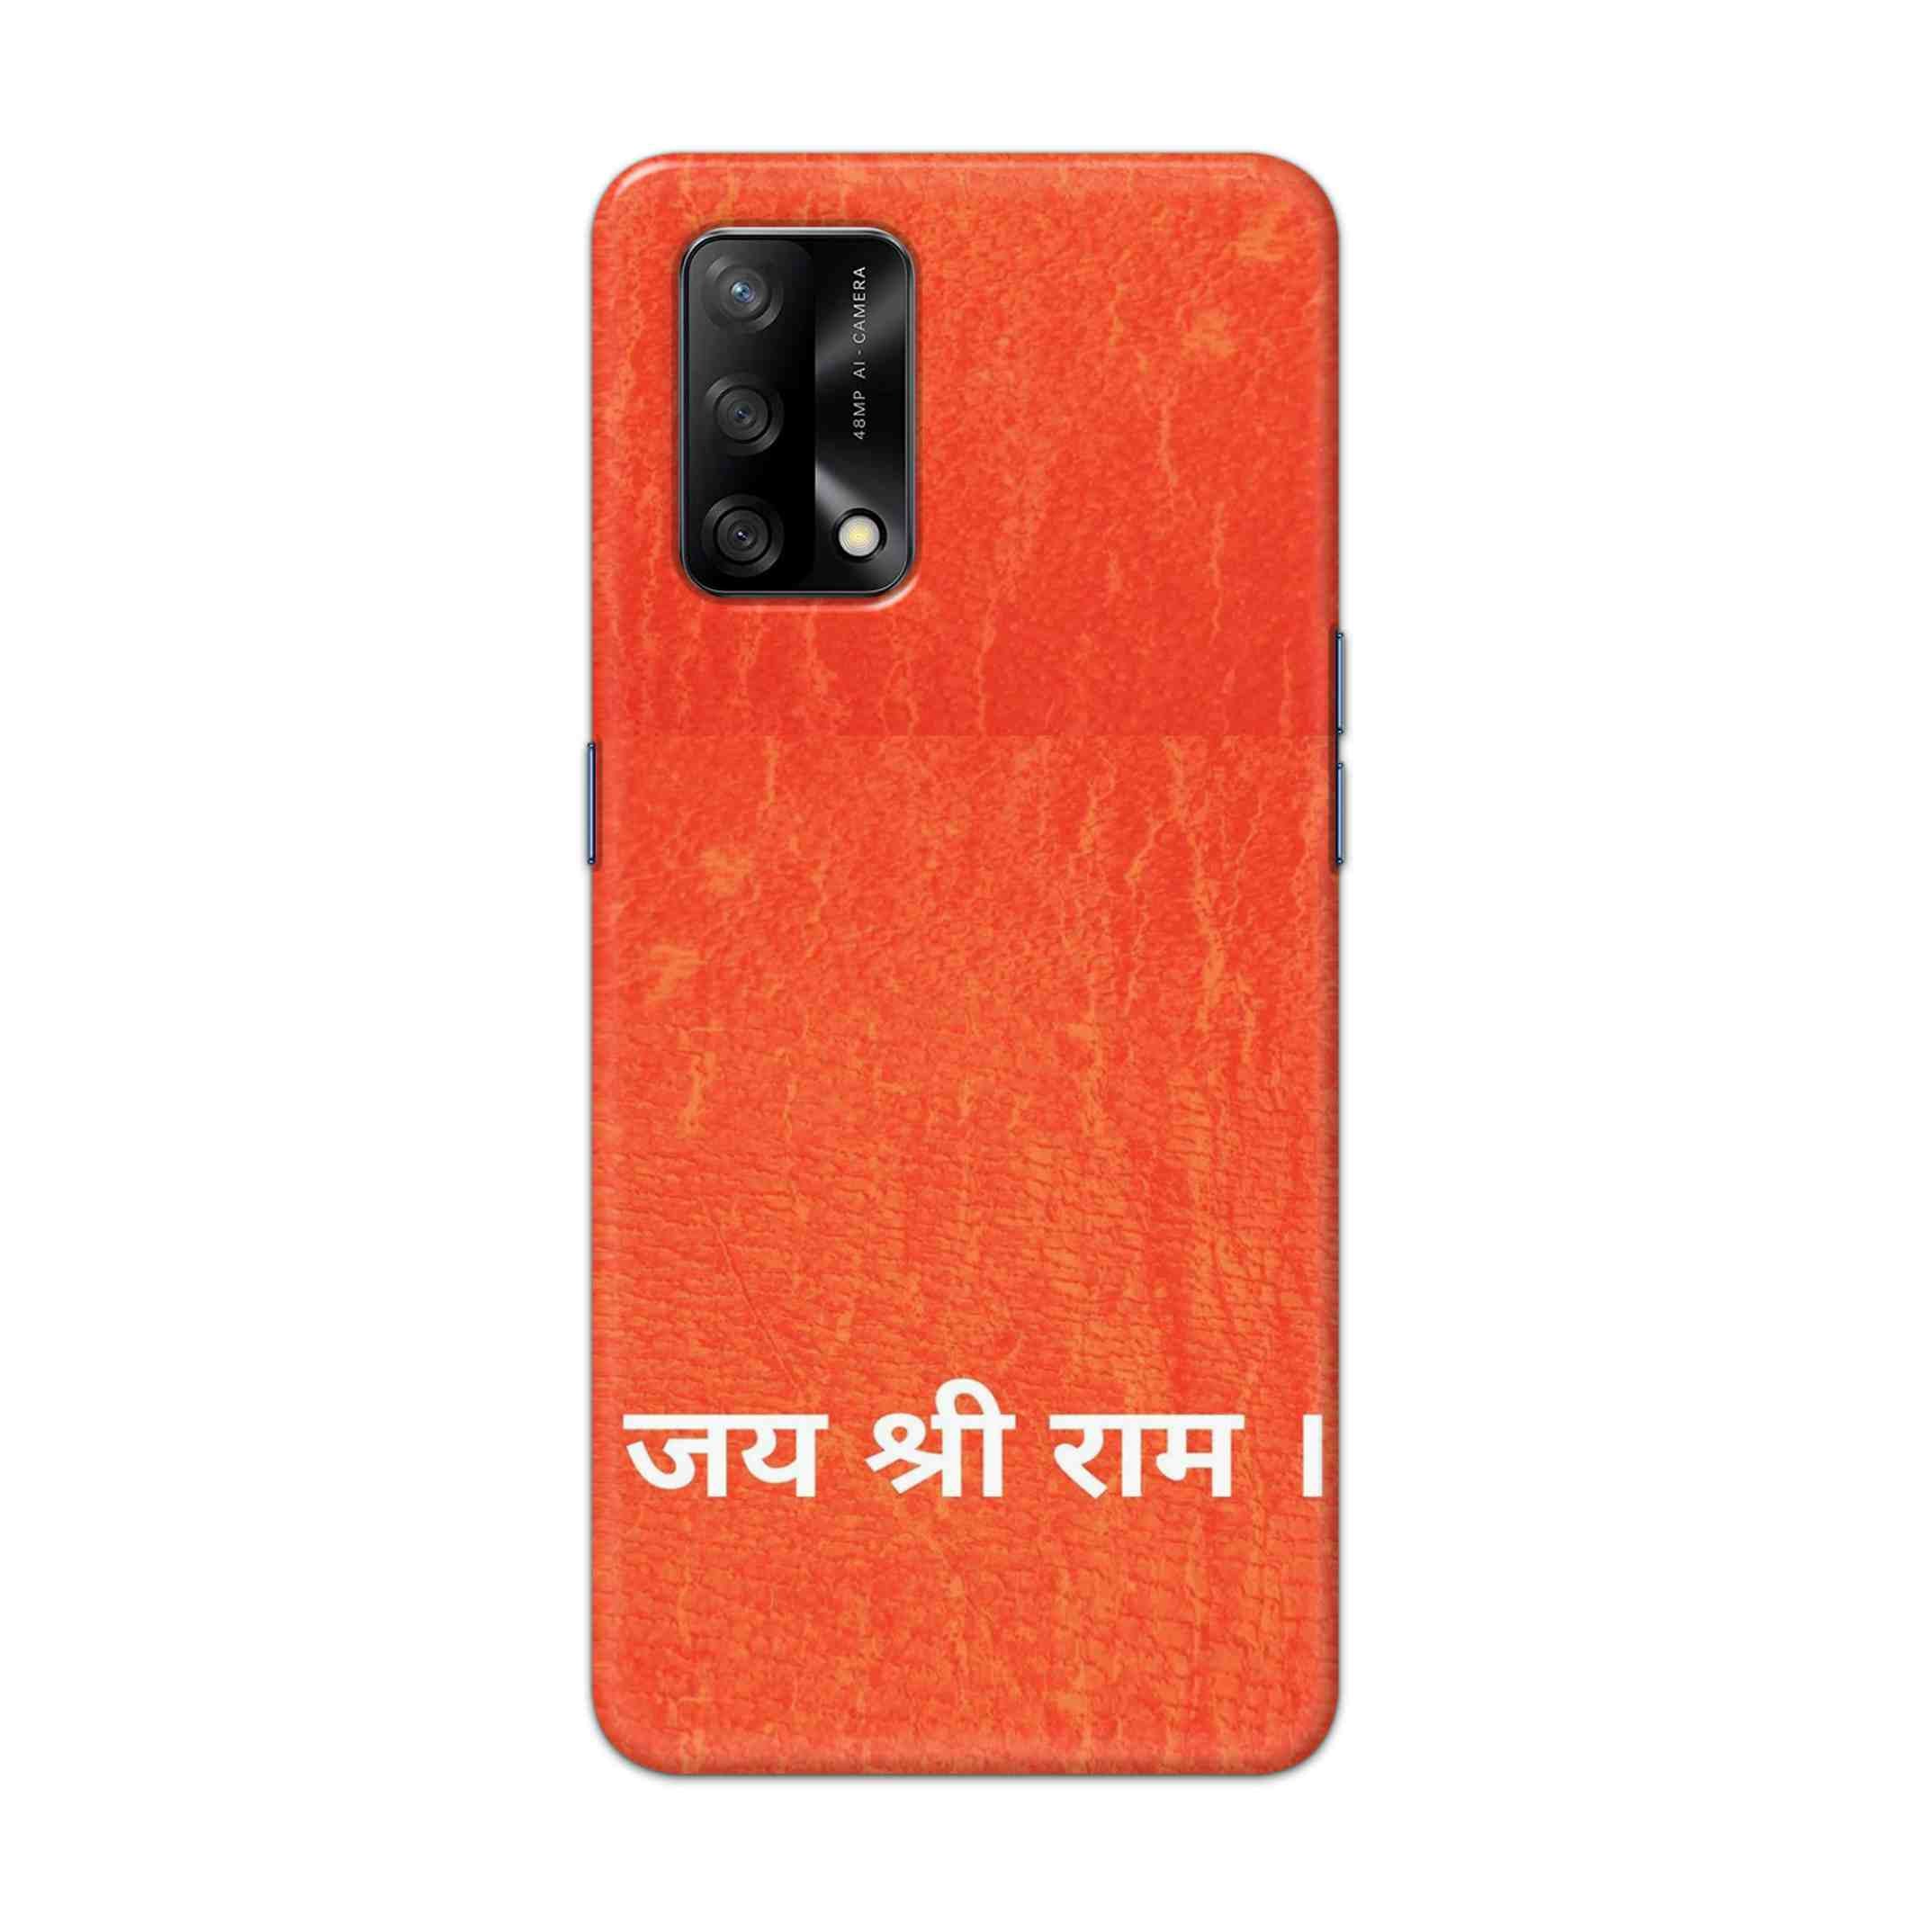 Buy Jai Shree Ram Hard Back Mobile Phone Case Cover For Oppo F19 Online